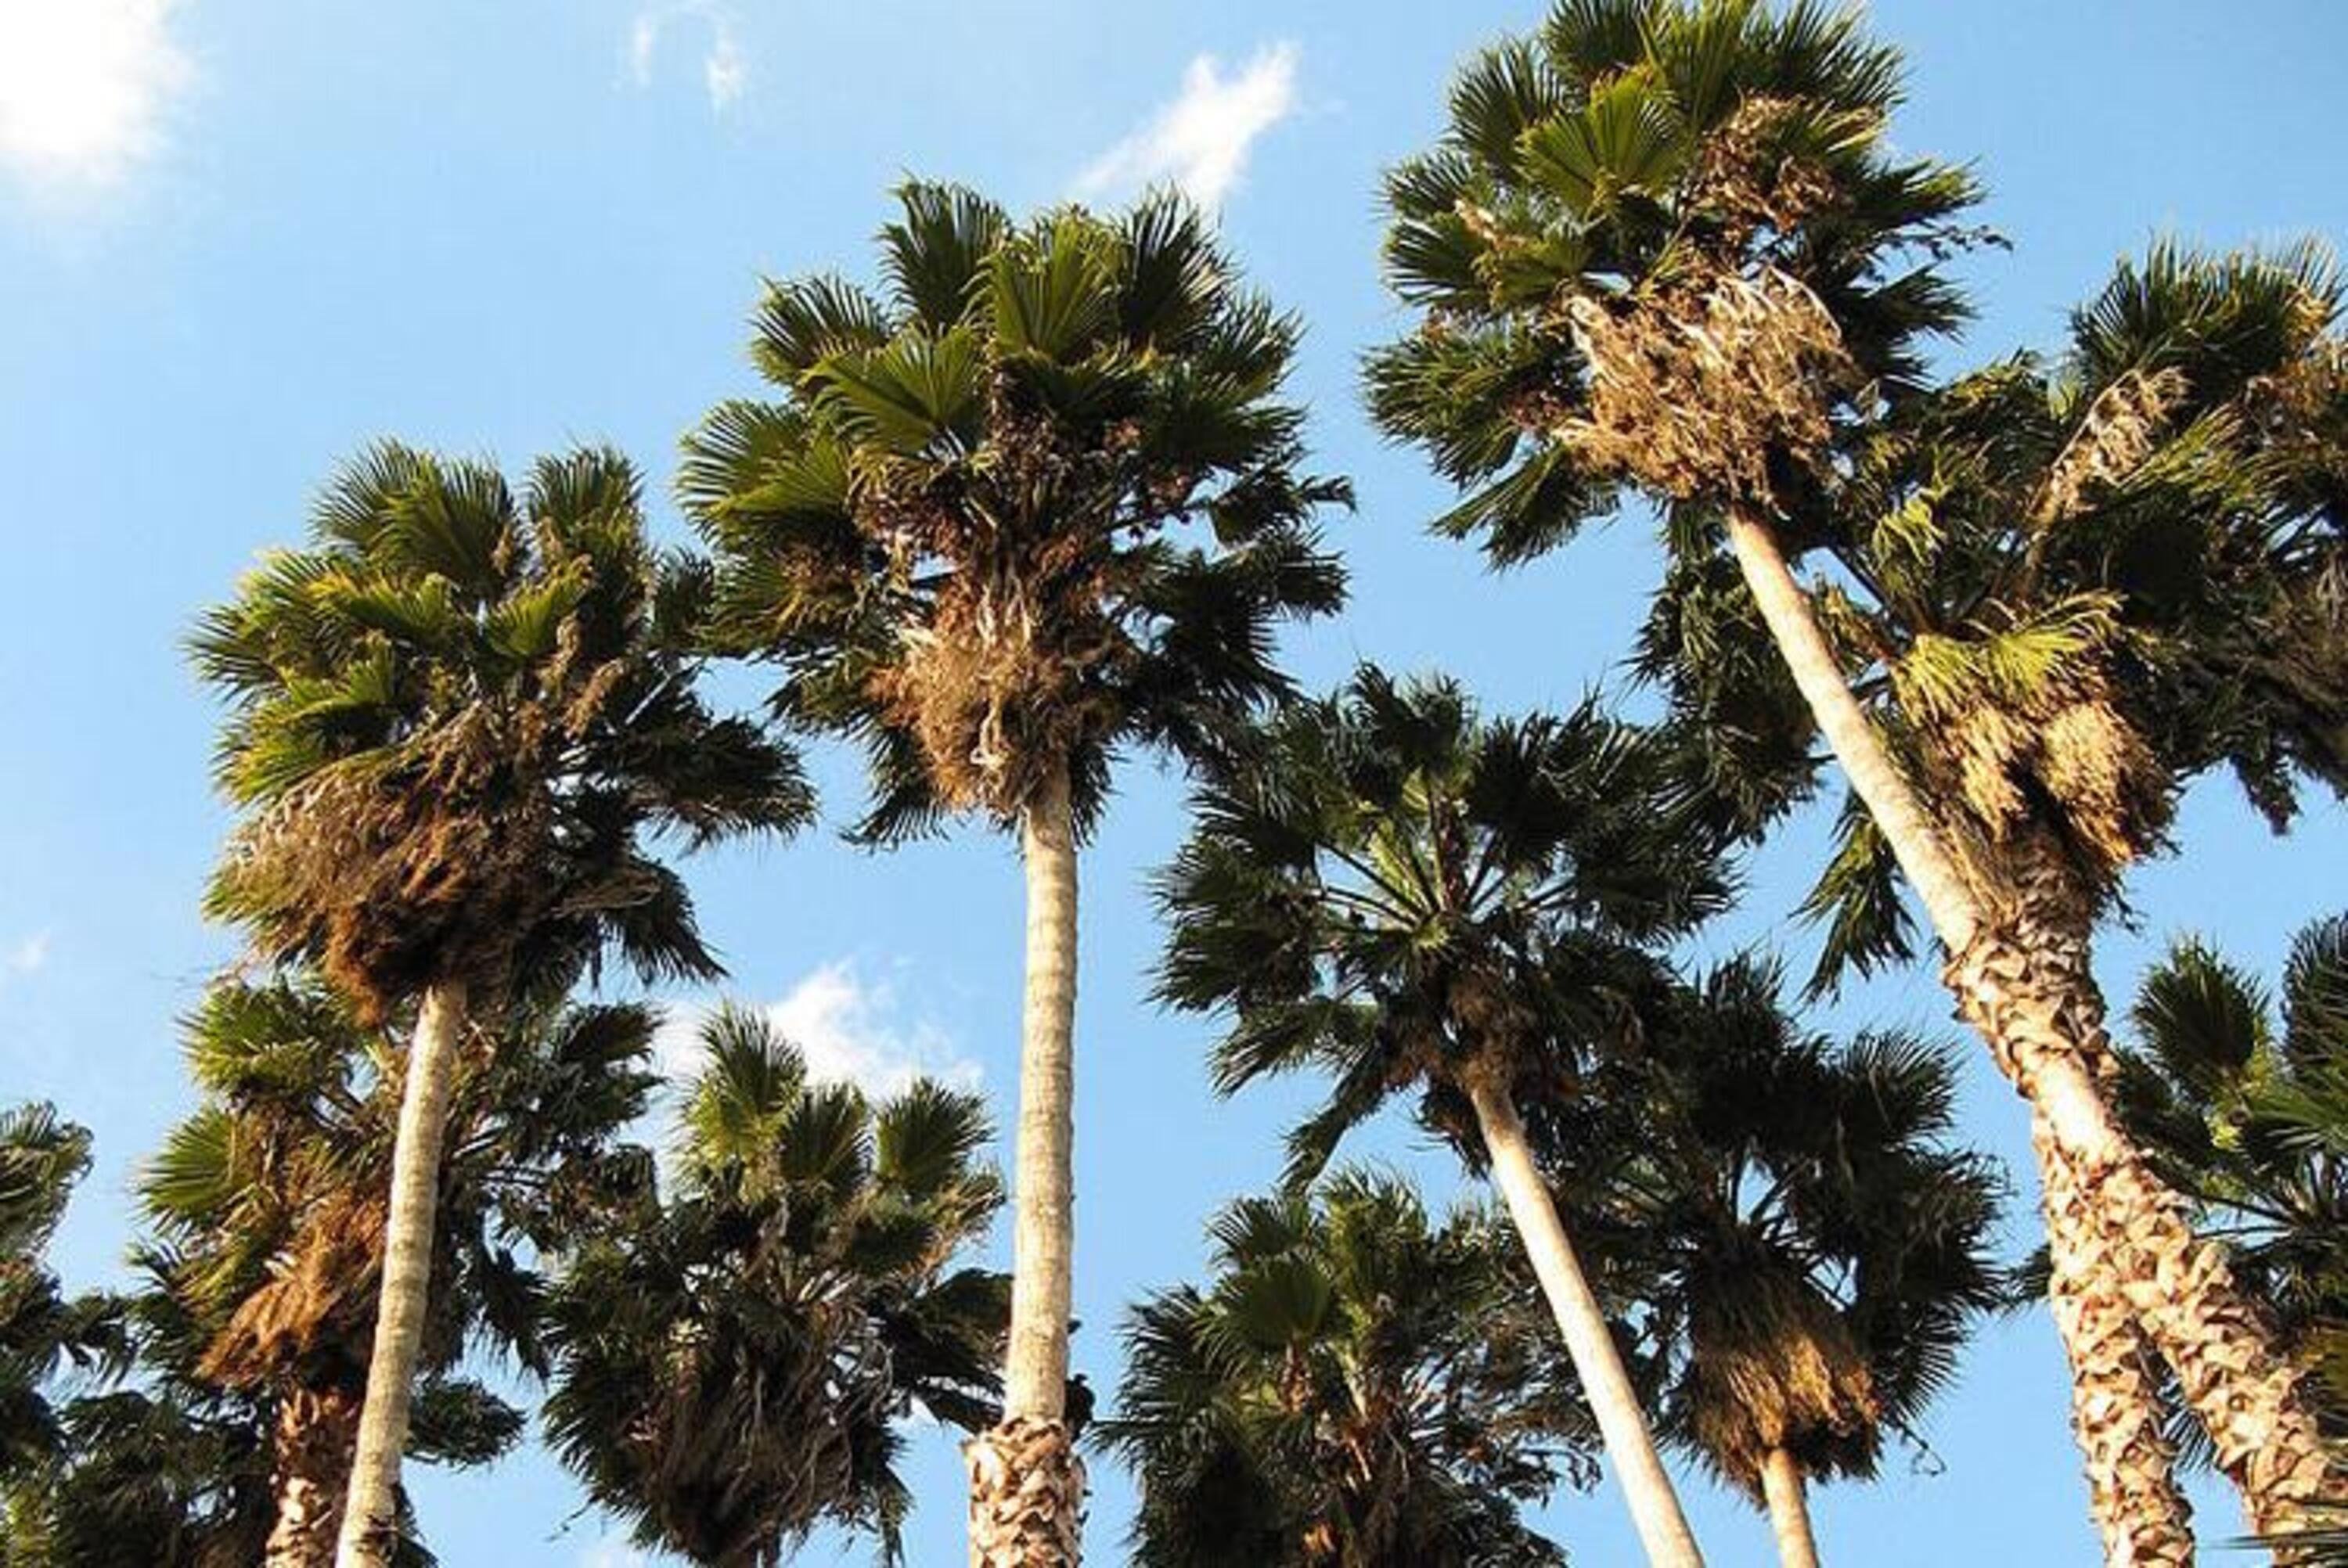 Occhio alla palma: certe piante alimentano il particolato e vanno scelte a basse emissioni [PM2.5 California]